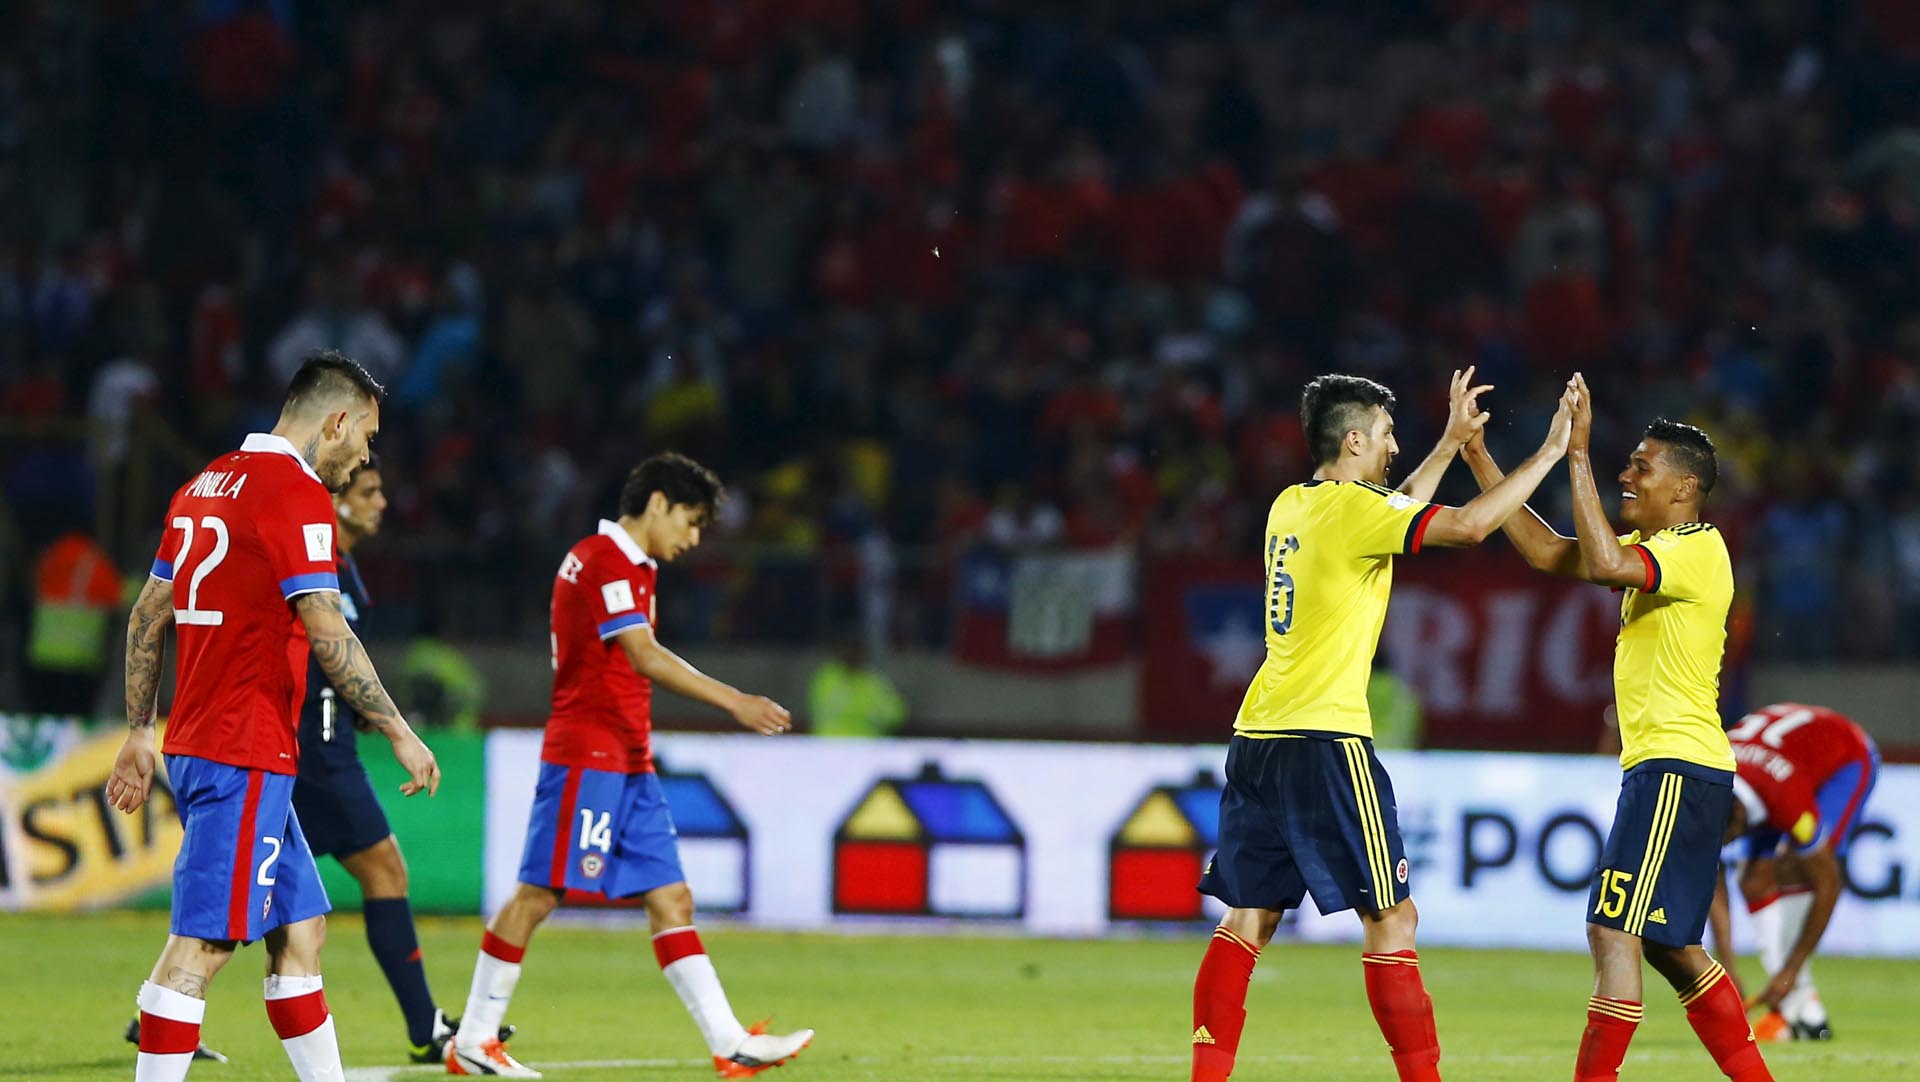 Gracias al buen desempeño, se espera que tenga una buena posición frente a los encuentros con Perú y Uruguay